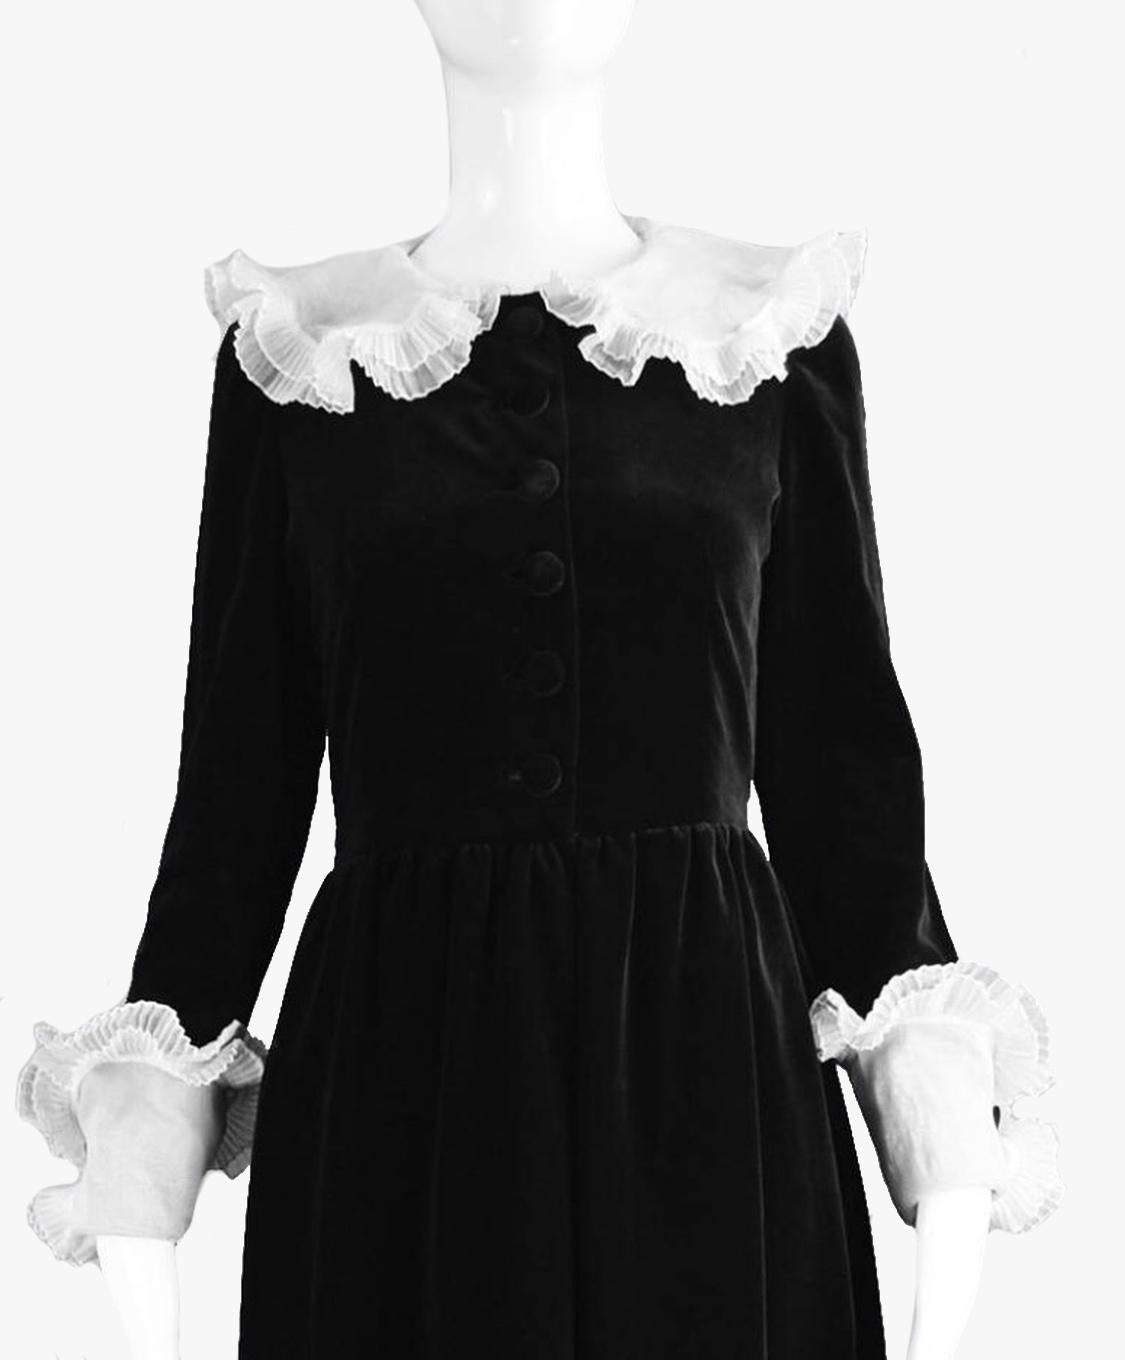 Ein exquisites Vintage Demi Couture Abendkleid aus den 1980er Jahren von  Nina Ricci.

Wunderschön konstruiert mit vielen Details, von Hand verarbeitet, in einem prächtigen schwarzen Samt mit weißem plissiertem Organzakragen und passender